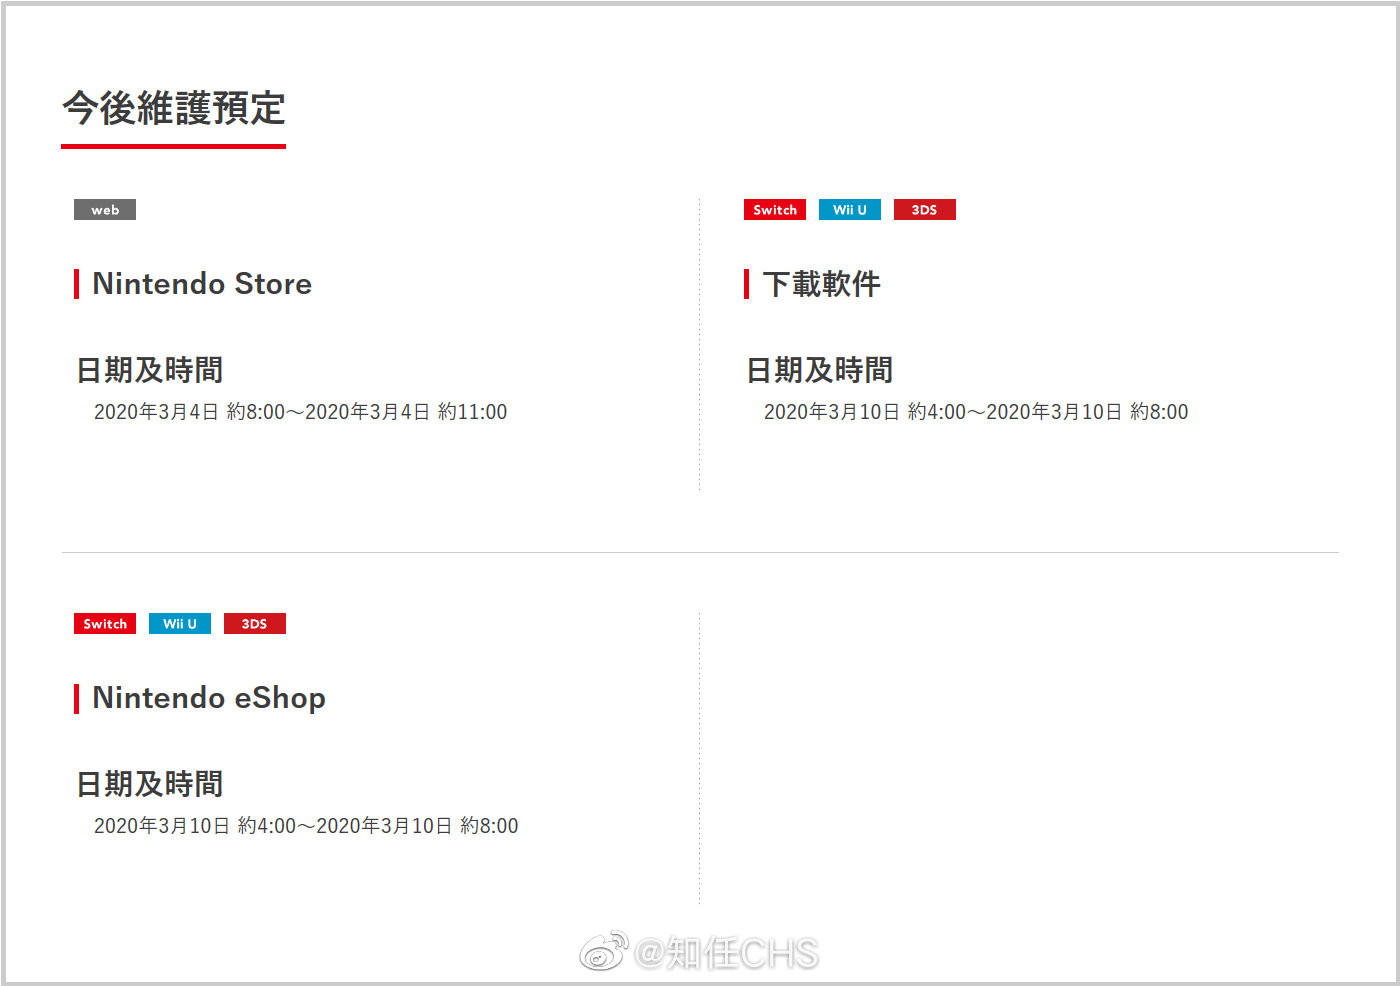 任天堂 香港 有限公司的nintendo Store 网页商店将于 来自网易大神圈子 知任chs